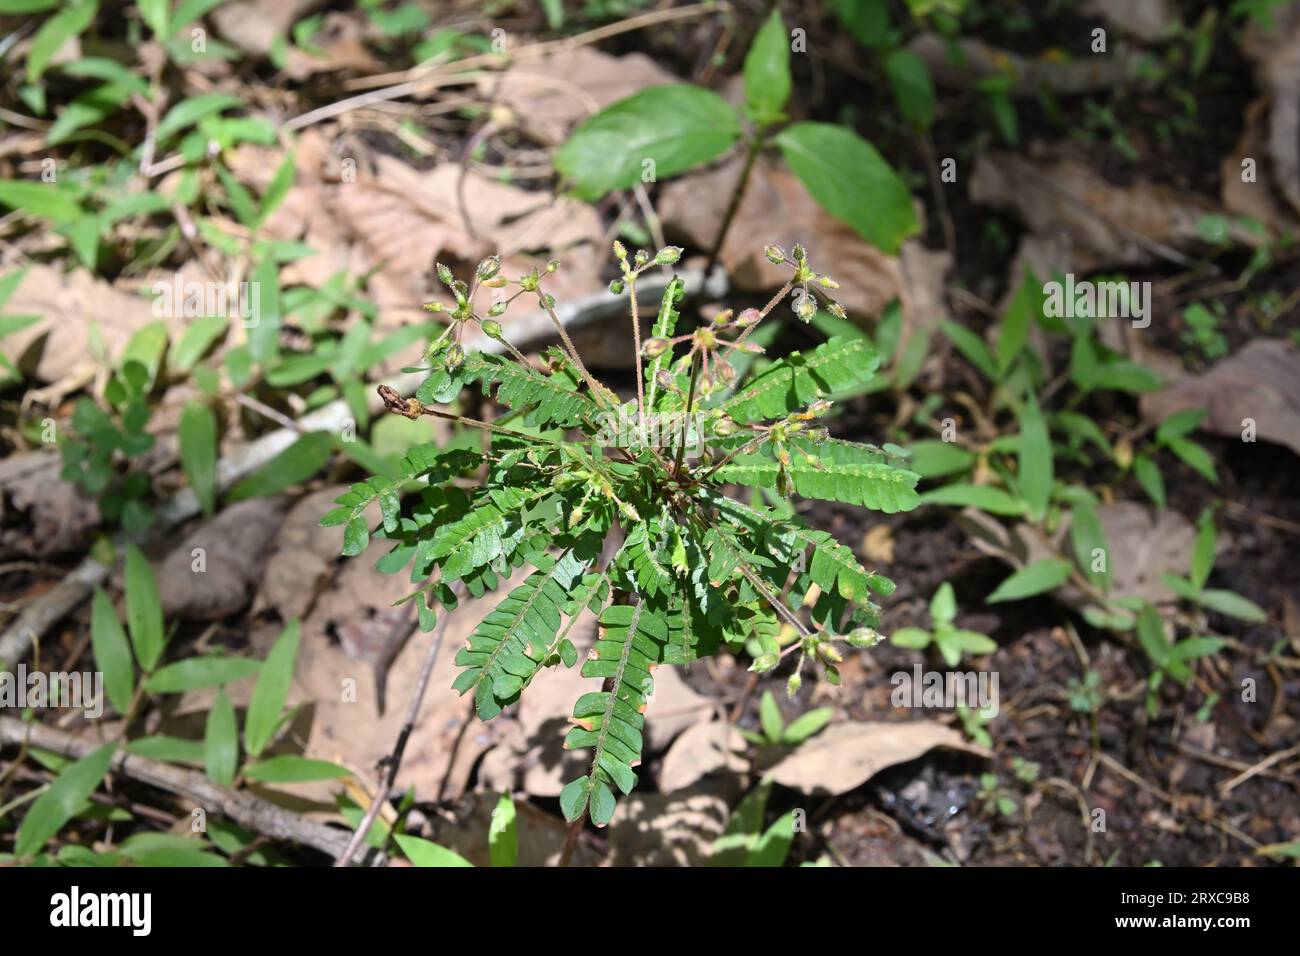 Nahaufnahme einer blühfertigen Reinwardt-Baumpflanze (Biophytum Reinwardtii), die in einem Wildgebiet wächst Stockfoto